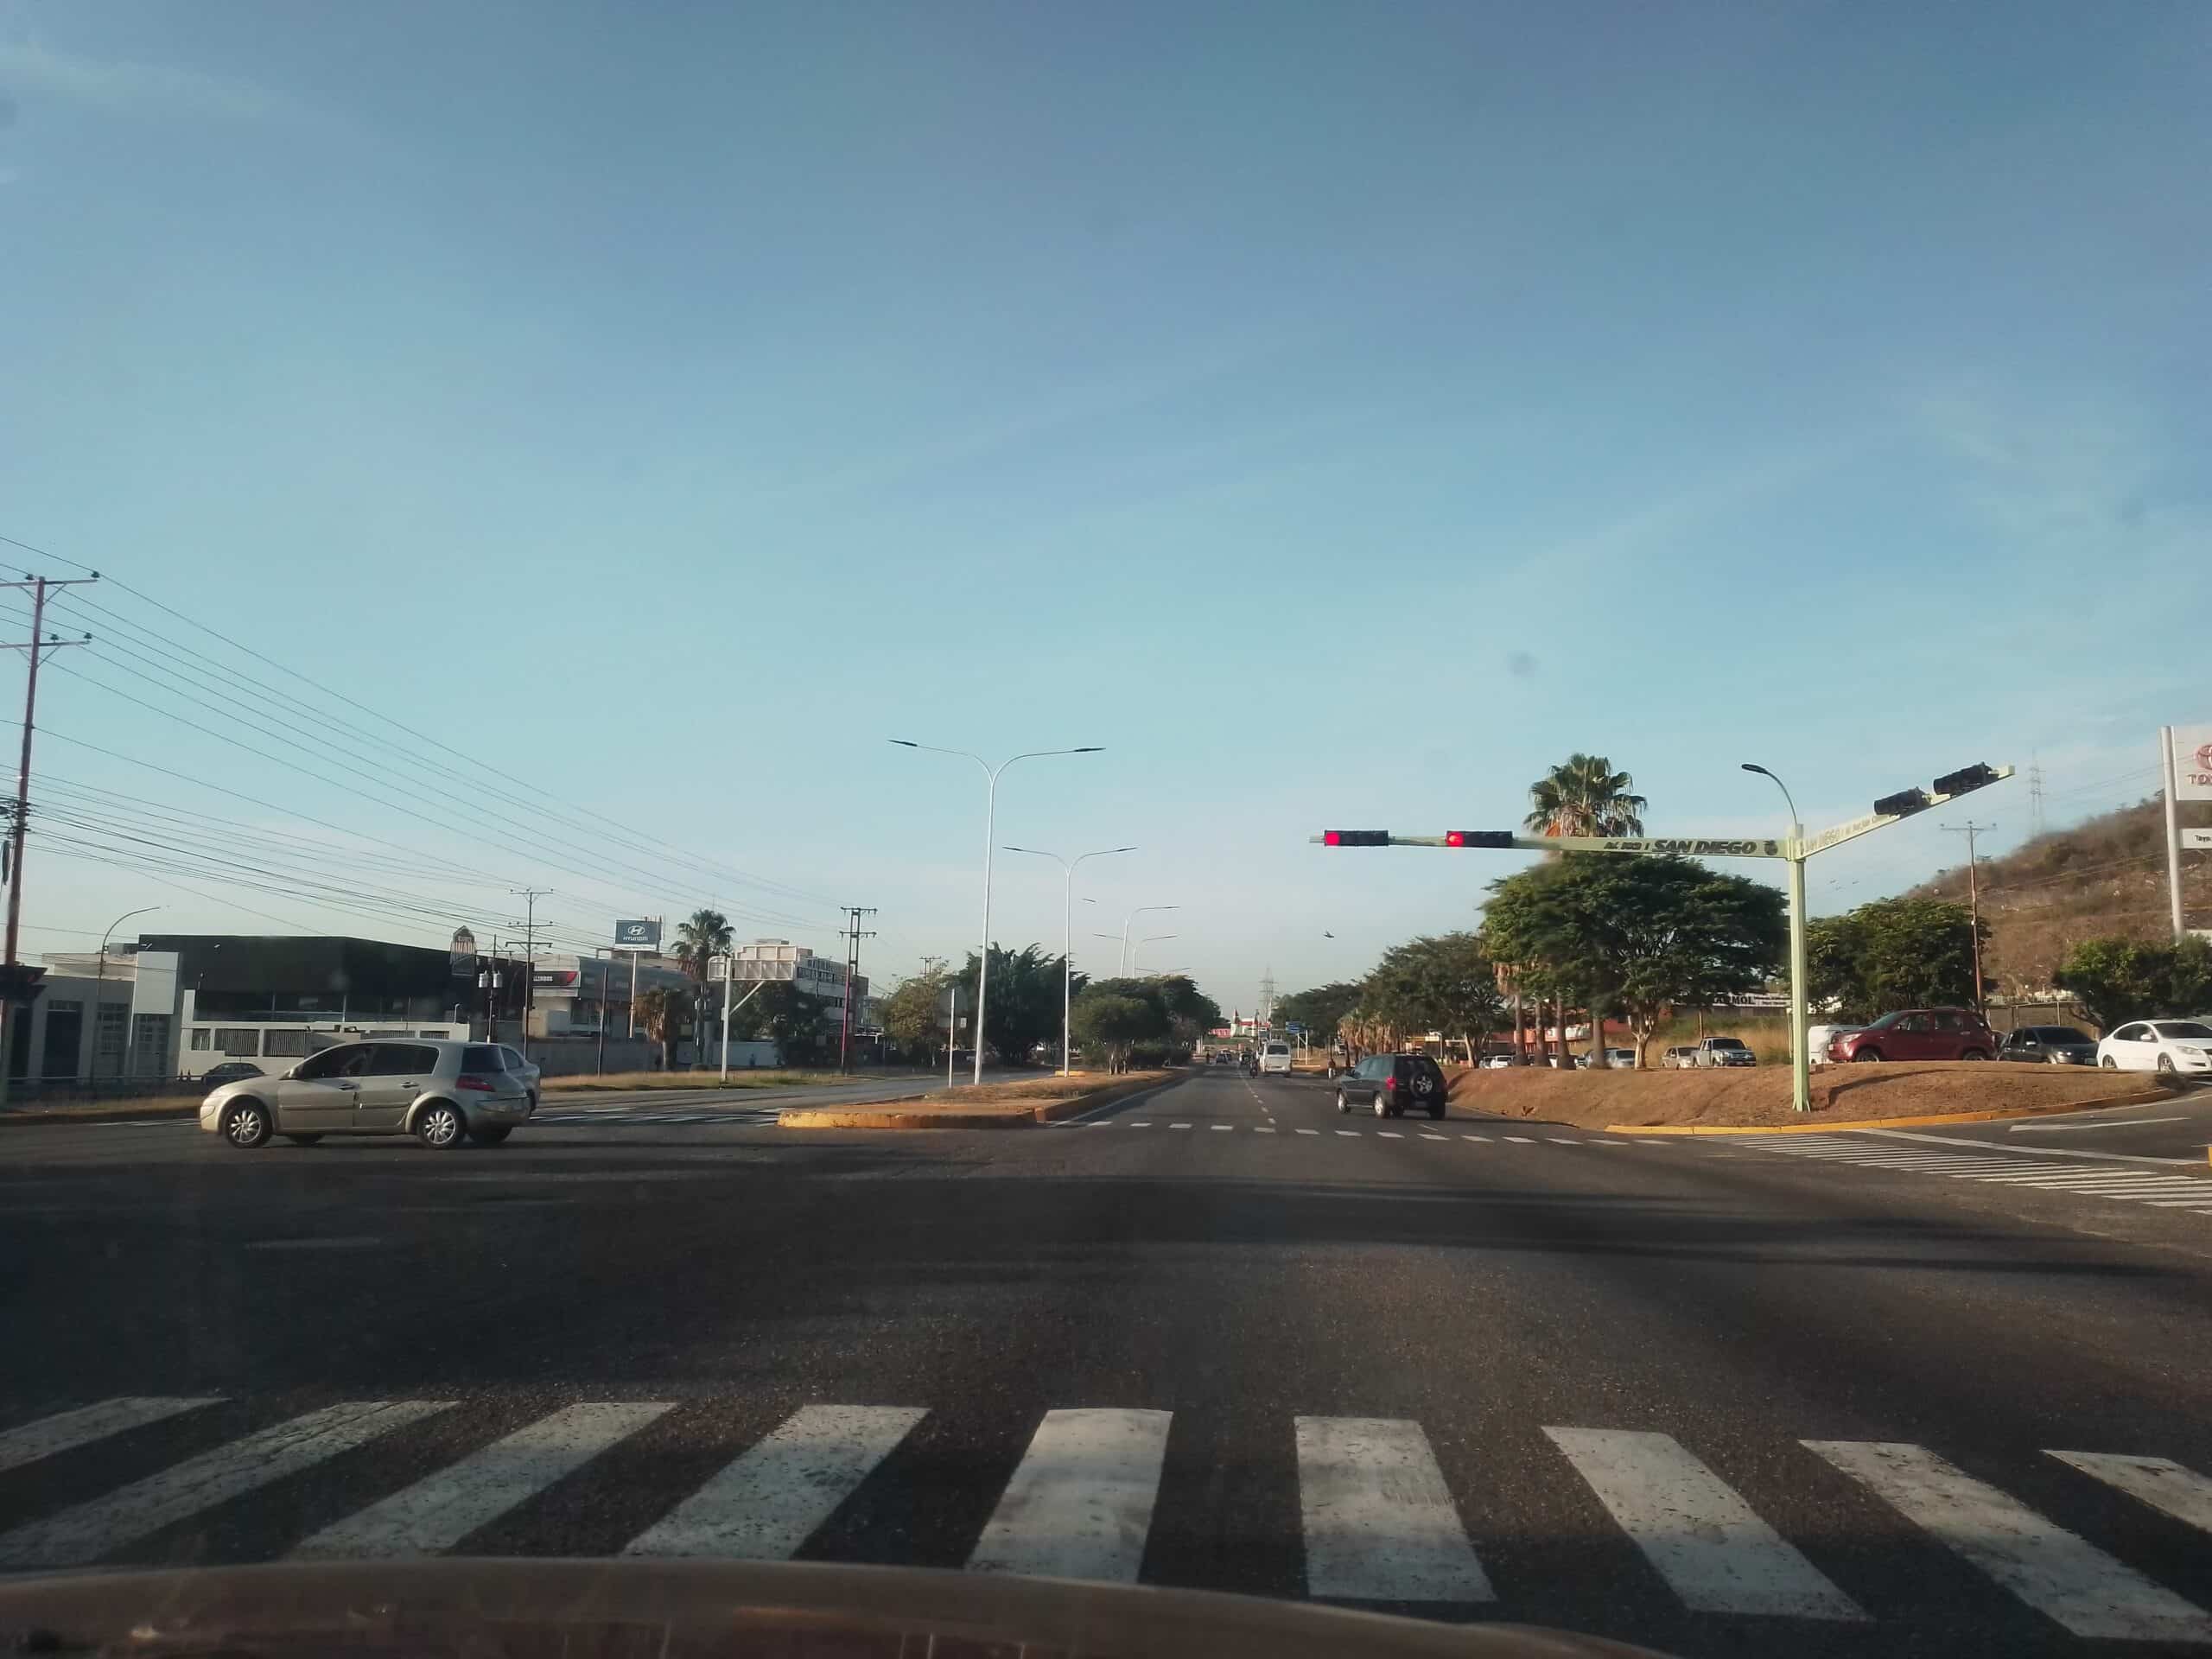 Respeta el semáforo - Respeta el semáforo